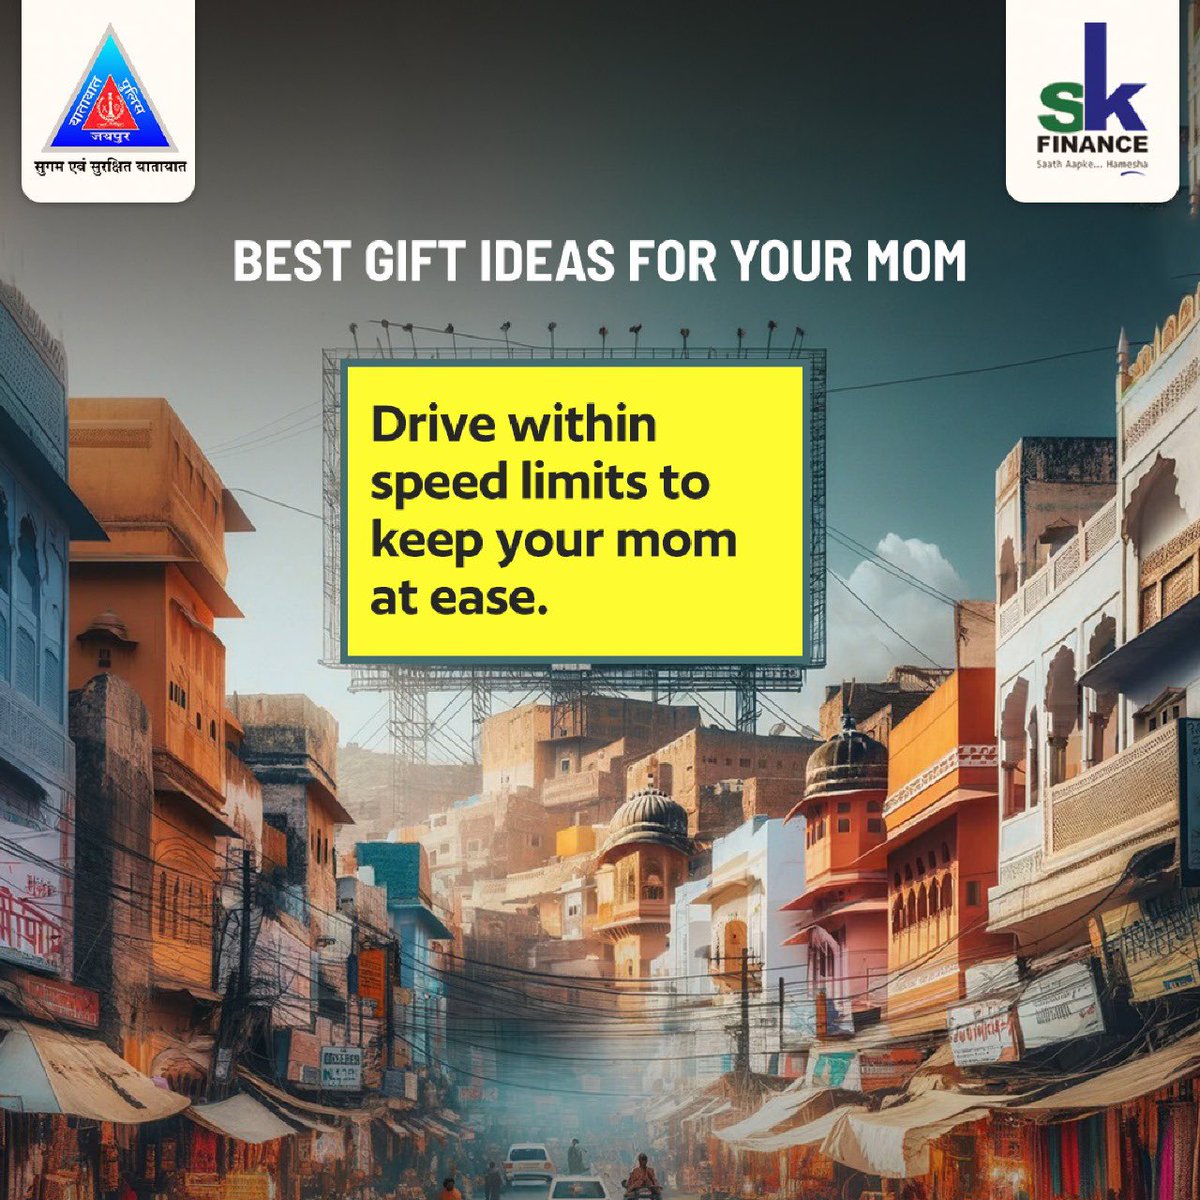 अपनी माँ को चिंता मुक्त रखें, घर पर सुरक्षित पहुंचने के लिए गाड़ी धीमी गति में ही चलाएं। 

#JaipurTrafficPolice #DriveSafe #SafetyFirst #FollowTrafficRules #MothersDay #MomKnowsBest #MotherCare #TravelSafe #NoOverspeeding